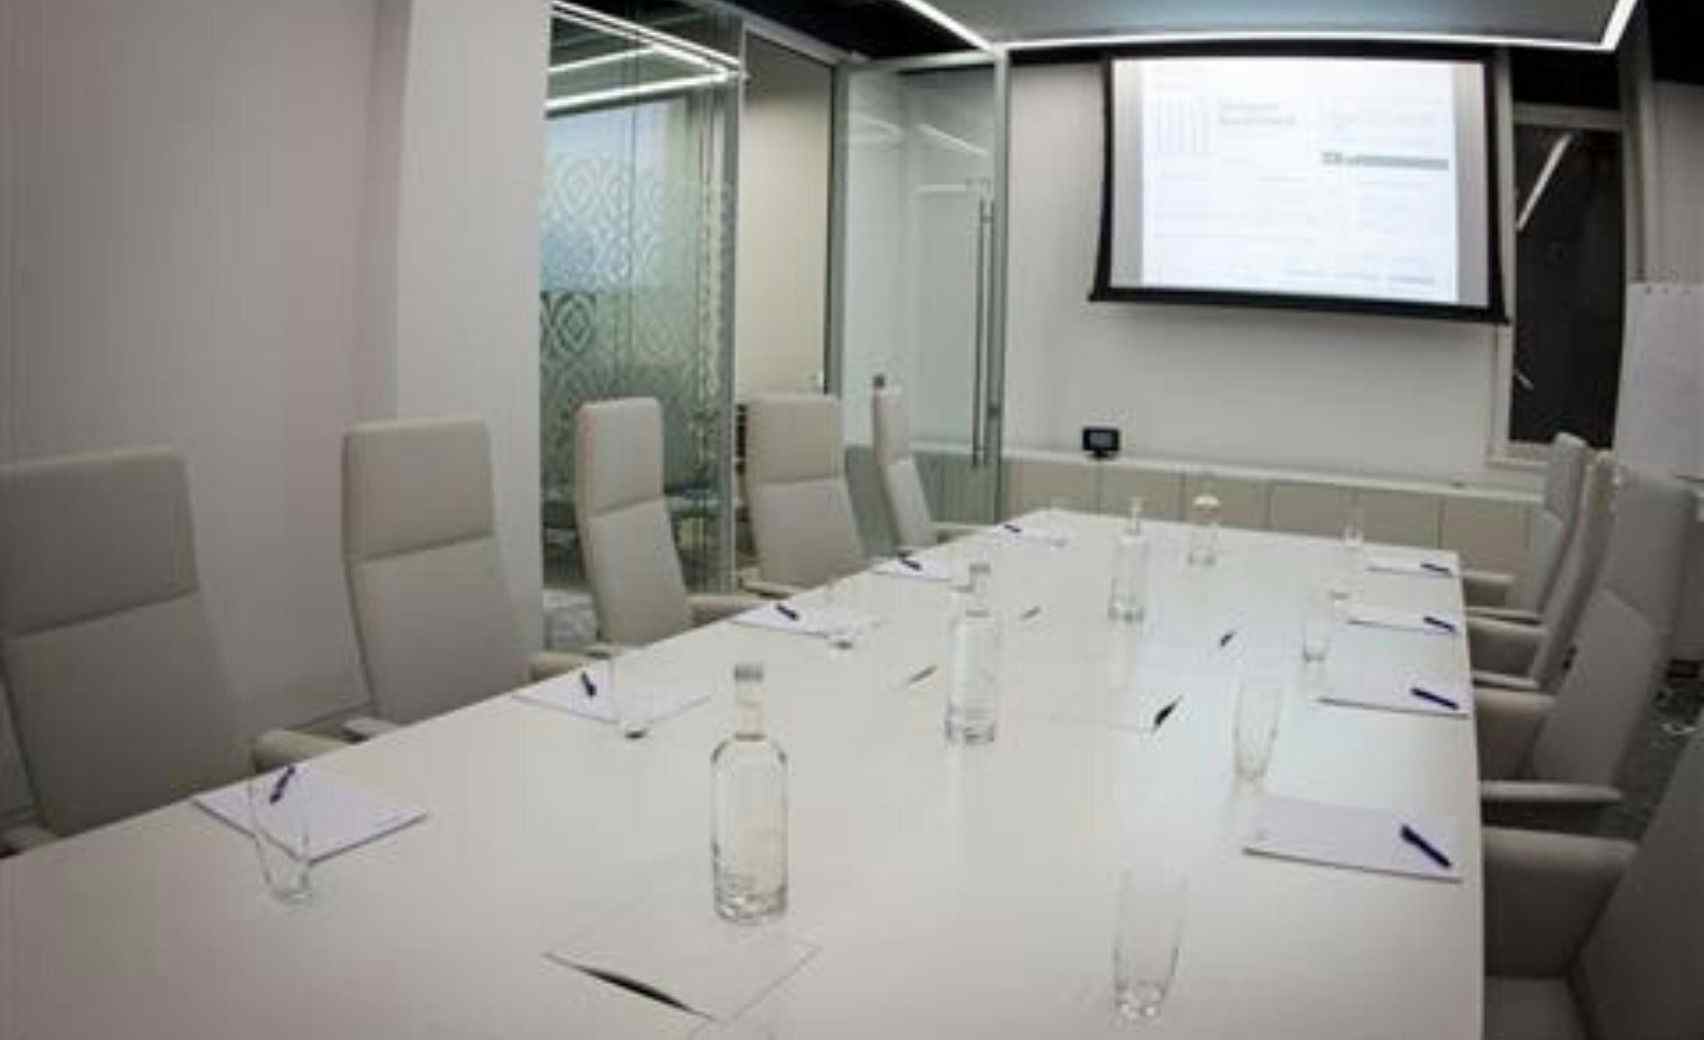 Ground Floor Meeting Room 12, 30 Euston Square